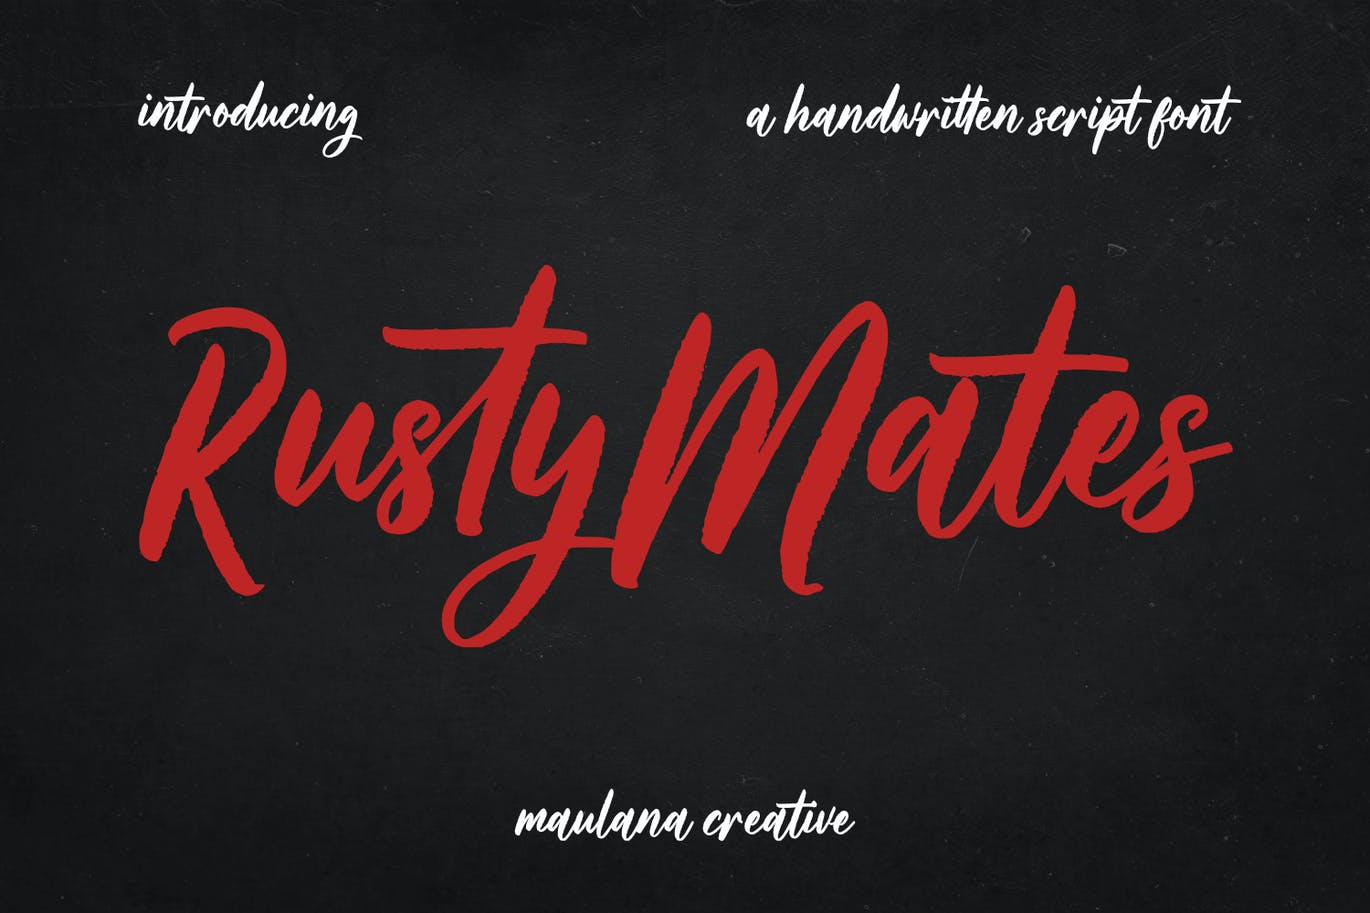 电影标题笔刷脚本字体 Rusty Mates Brush Script Font 设计素材 第1张